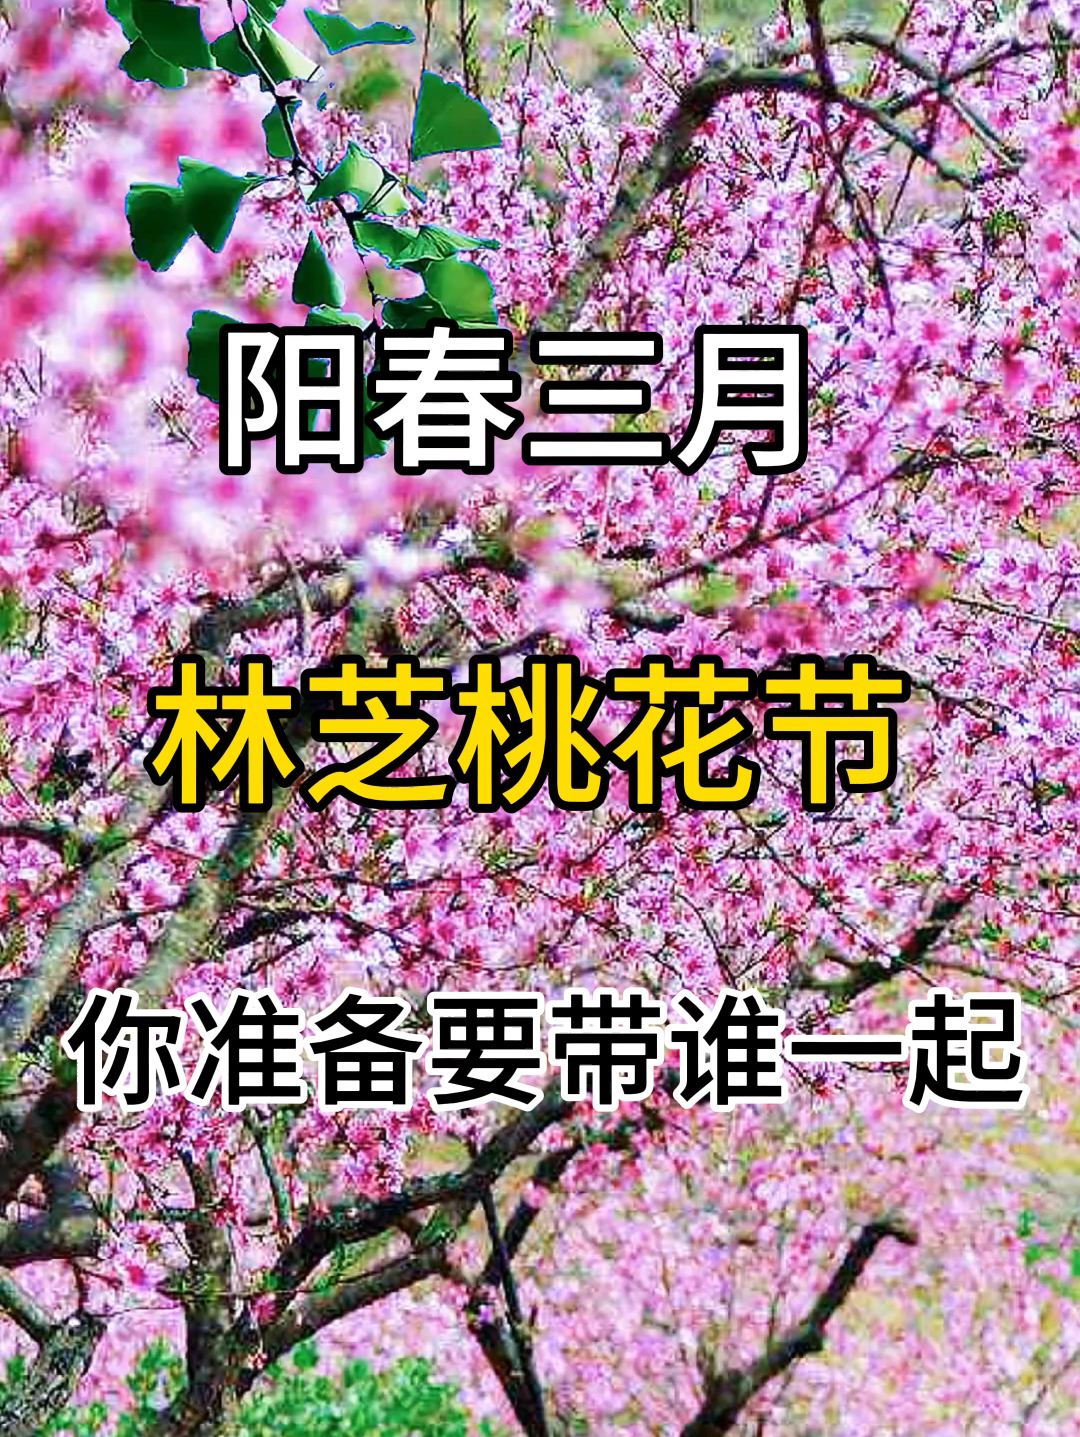 中国最美的春天！ #春天玩点花的 #春天赏花季 #旅行攻略 #和朋友出去撒欢儿 #情侣出游